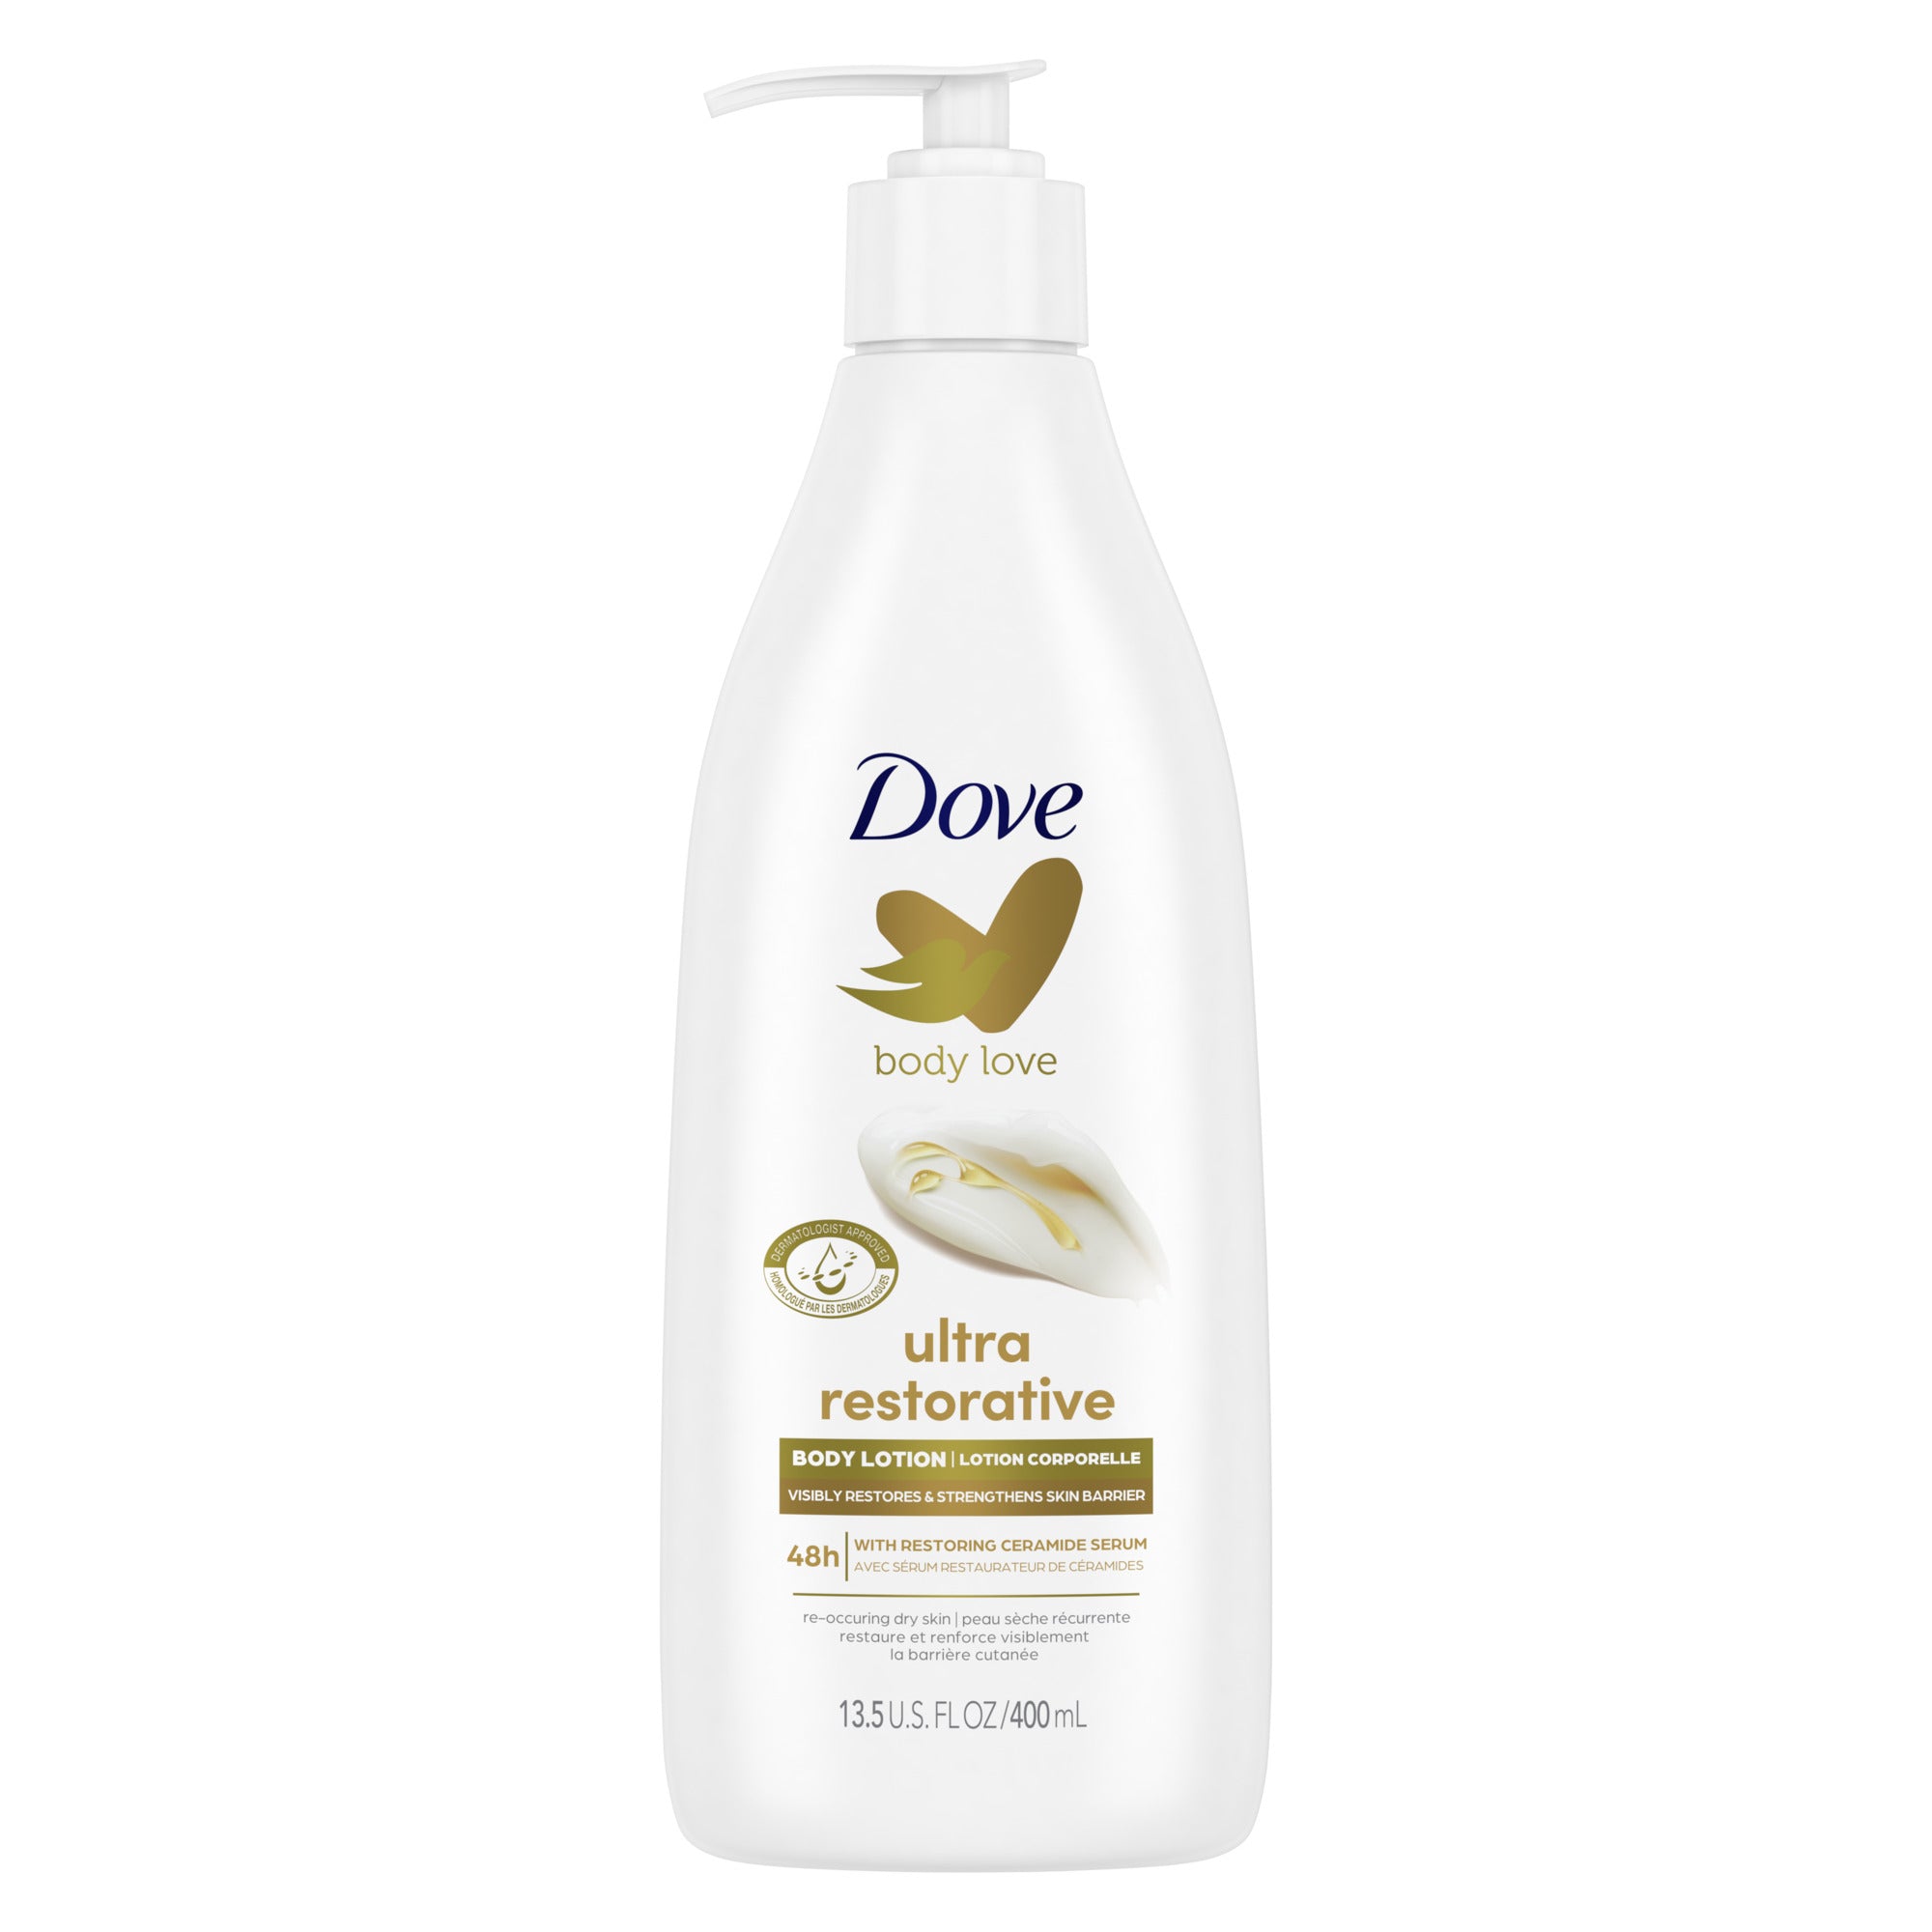 Dove Body Love Lotion corporelle ultra réparatrice pour peaux sèches récurrentes qui restaure et renforce visiblement la barrière cutanée 400 ml